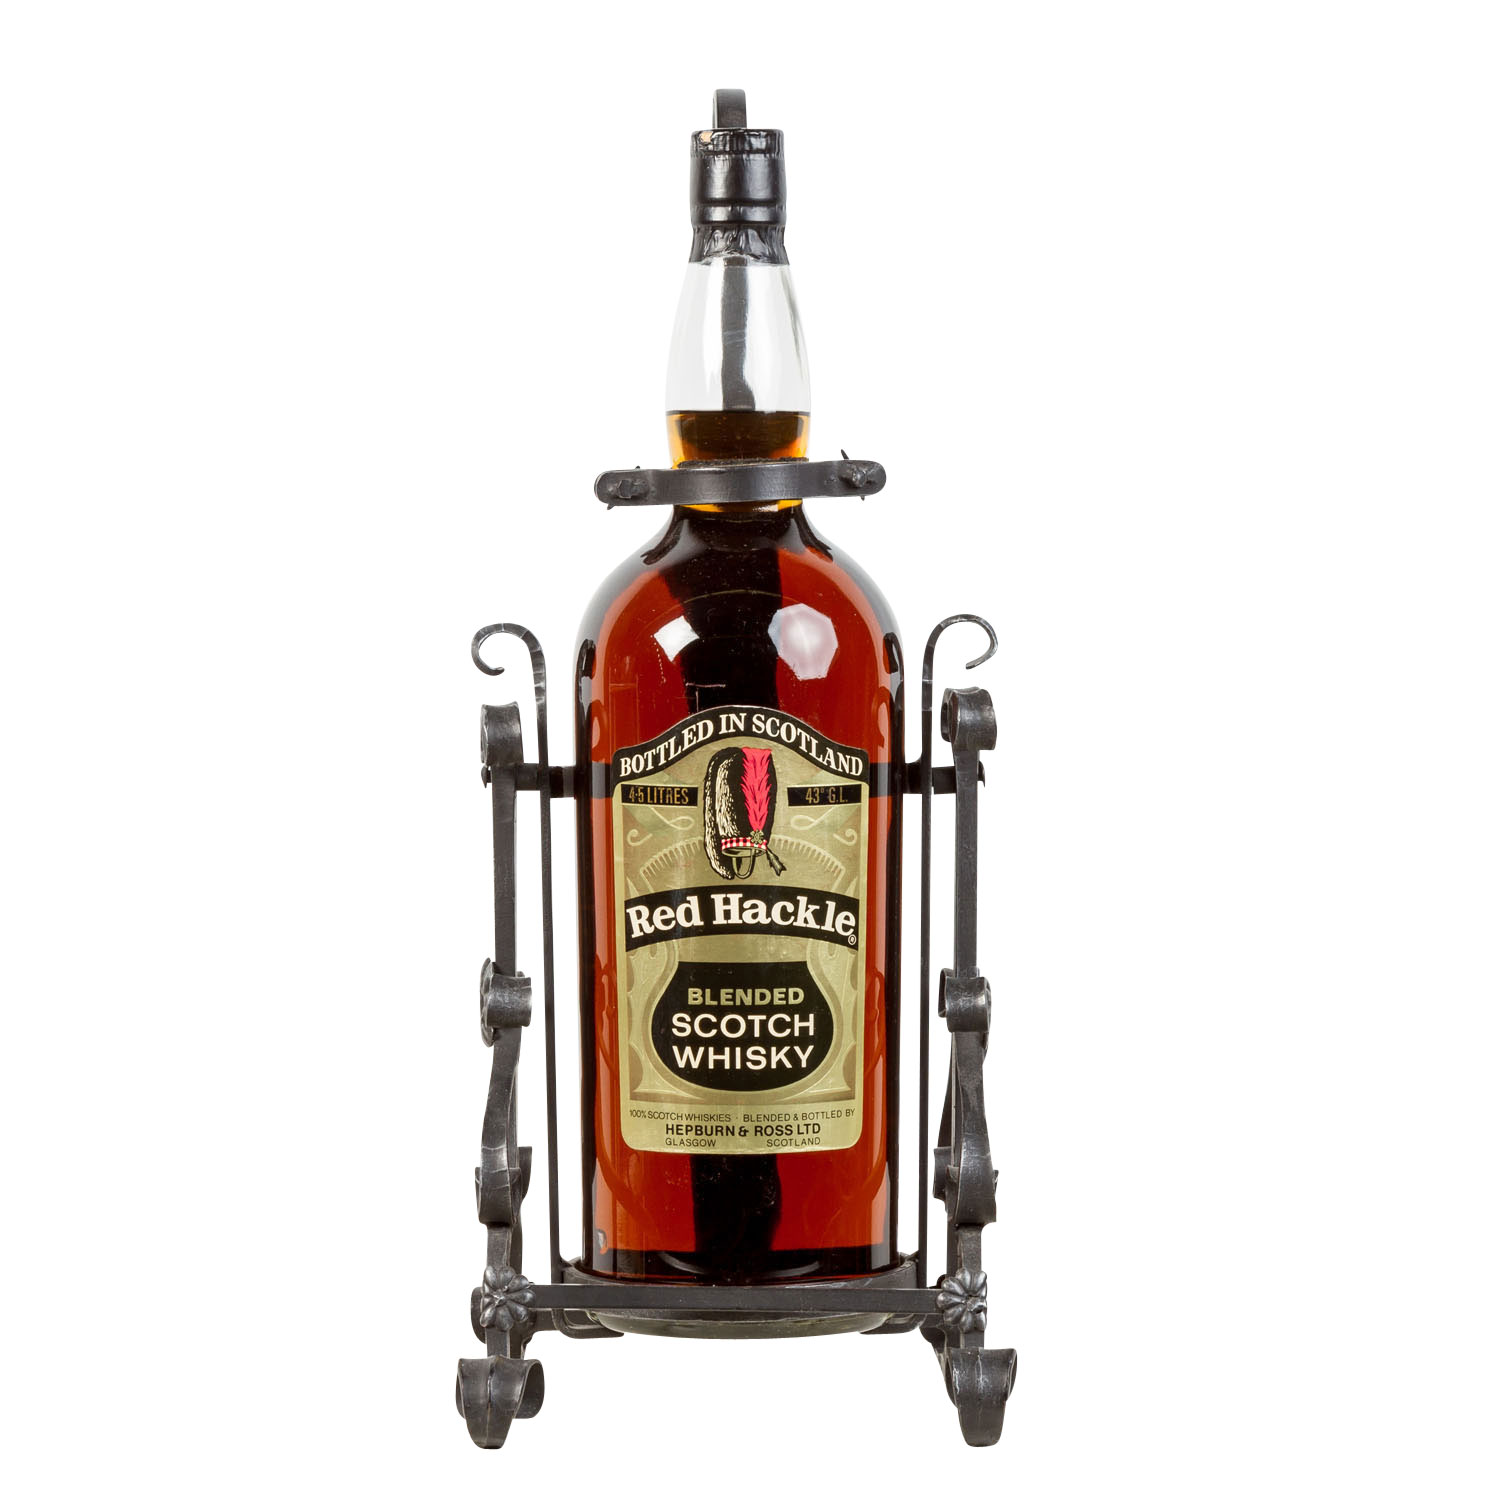 RED HACKLE Blended Scotch Whisky,Region: Scotland, 43% Vol., 4500ml, Füllstand im Flaschenhals, in